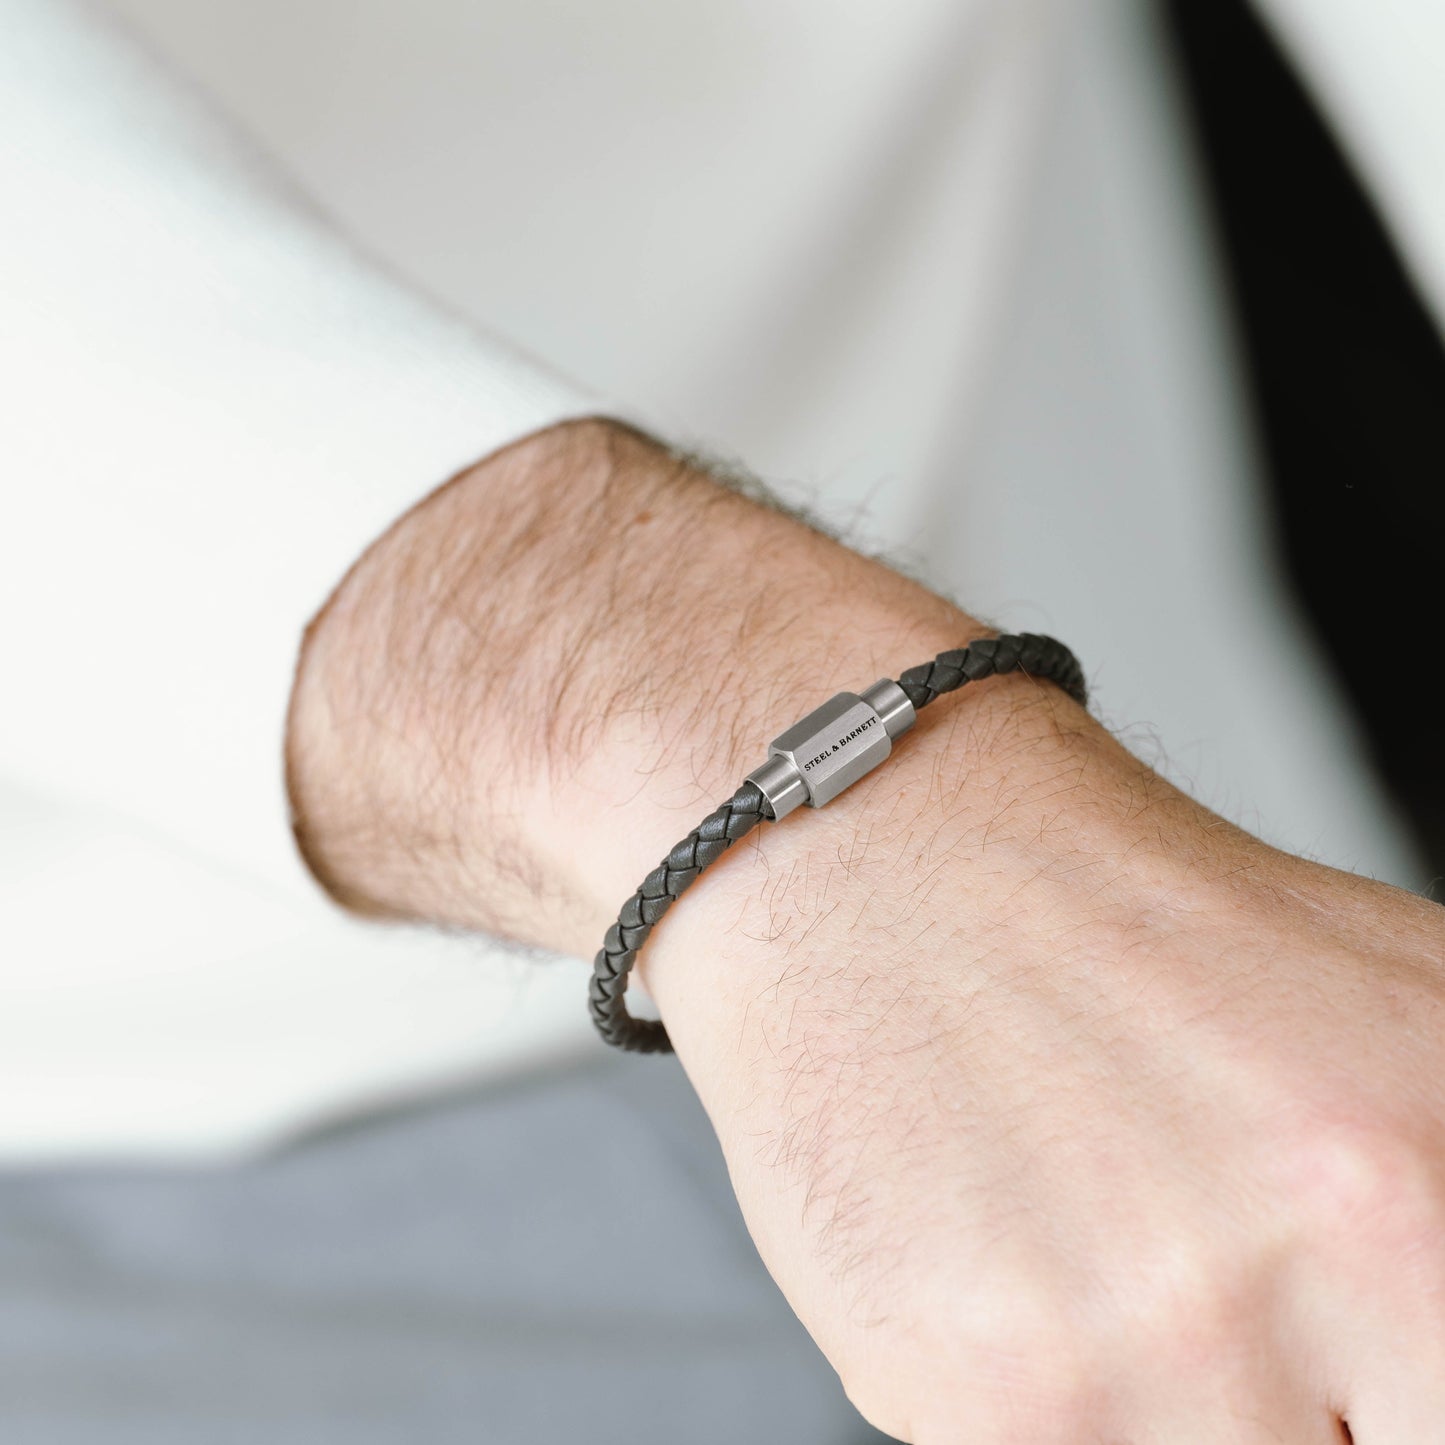 grey thin leather bracelet for men steel and barnett stainless steel gifts for him Luke Landon Nappa Leather Bracelet Dark Gray